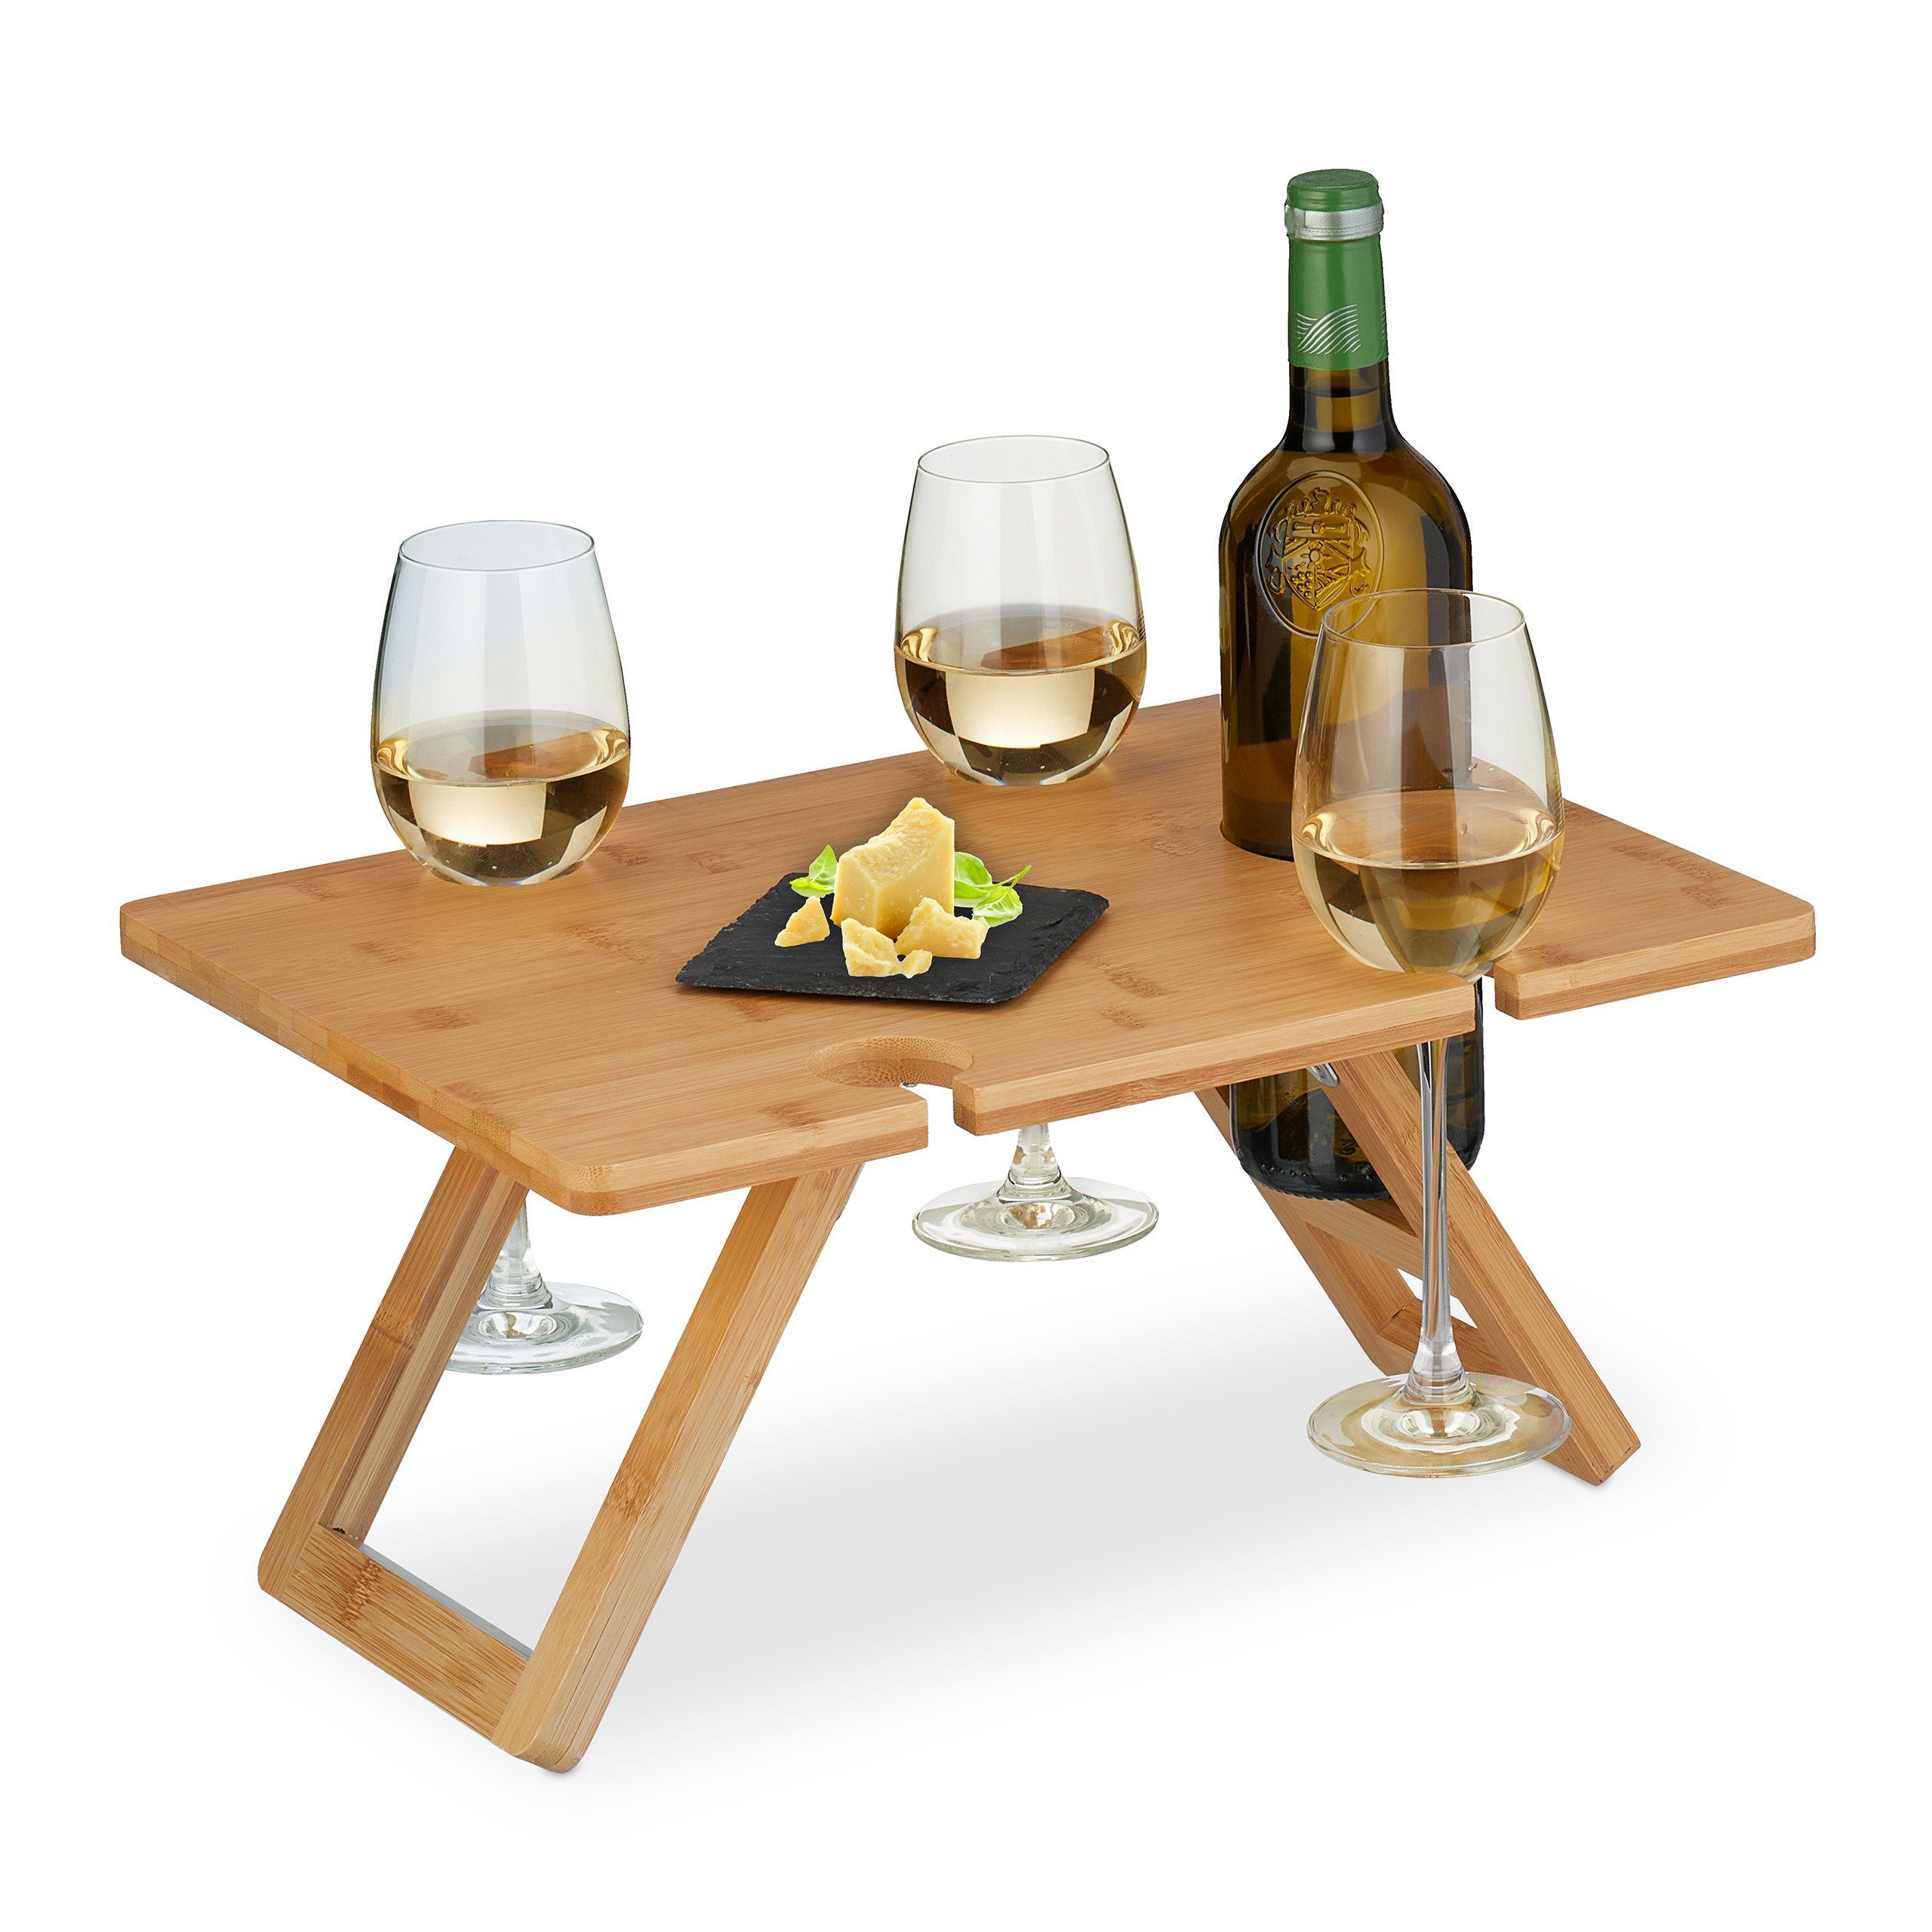 Weintisch aus Picknick relaxdays Eckiger Tabletttisch Bambus